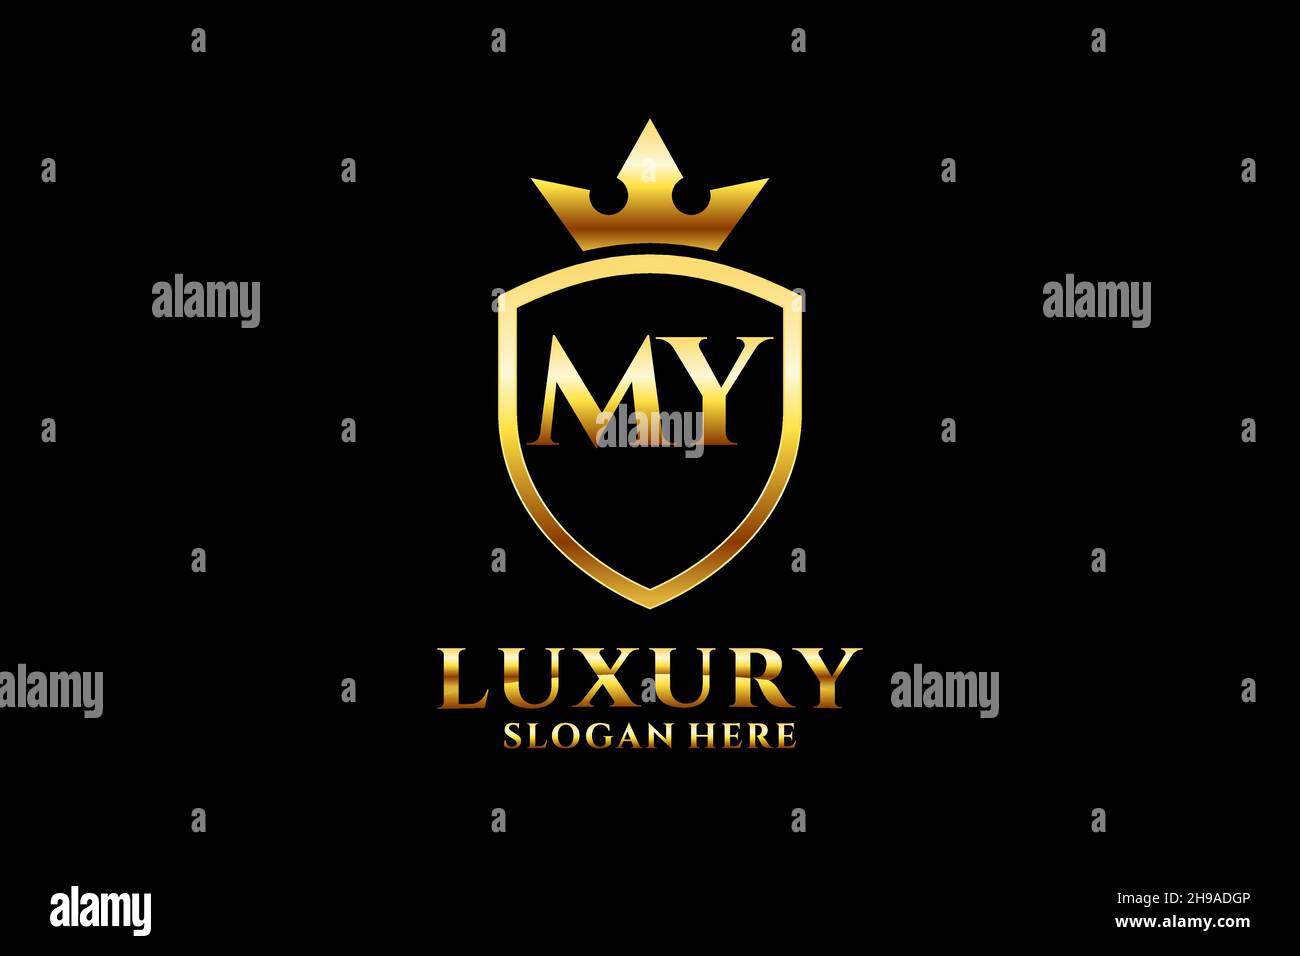 MON élégant logo de monogramme de luxe ou modèle de badge avec des rouleaux et couronne royale - parfait pour les projets de marque de luxe Illustration de Vecteur